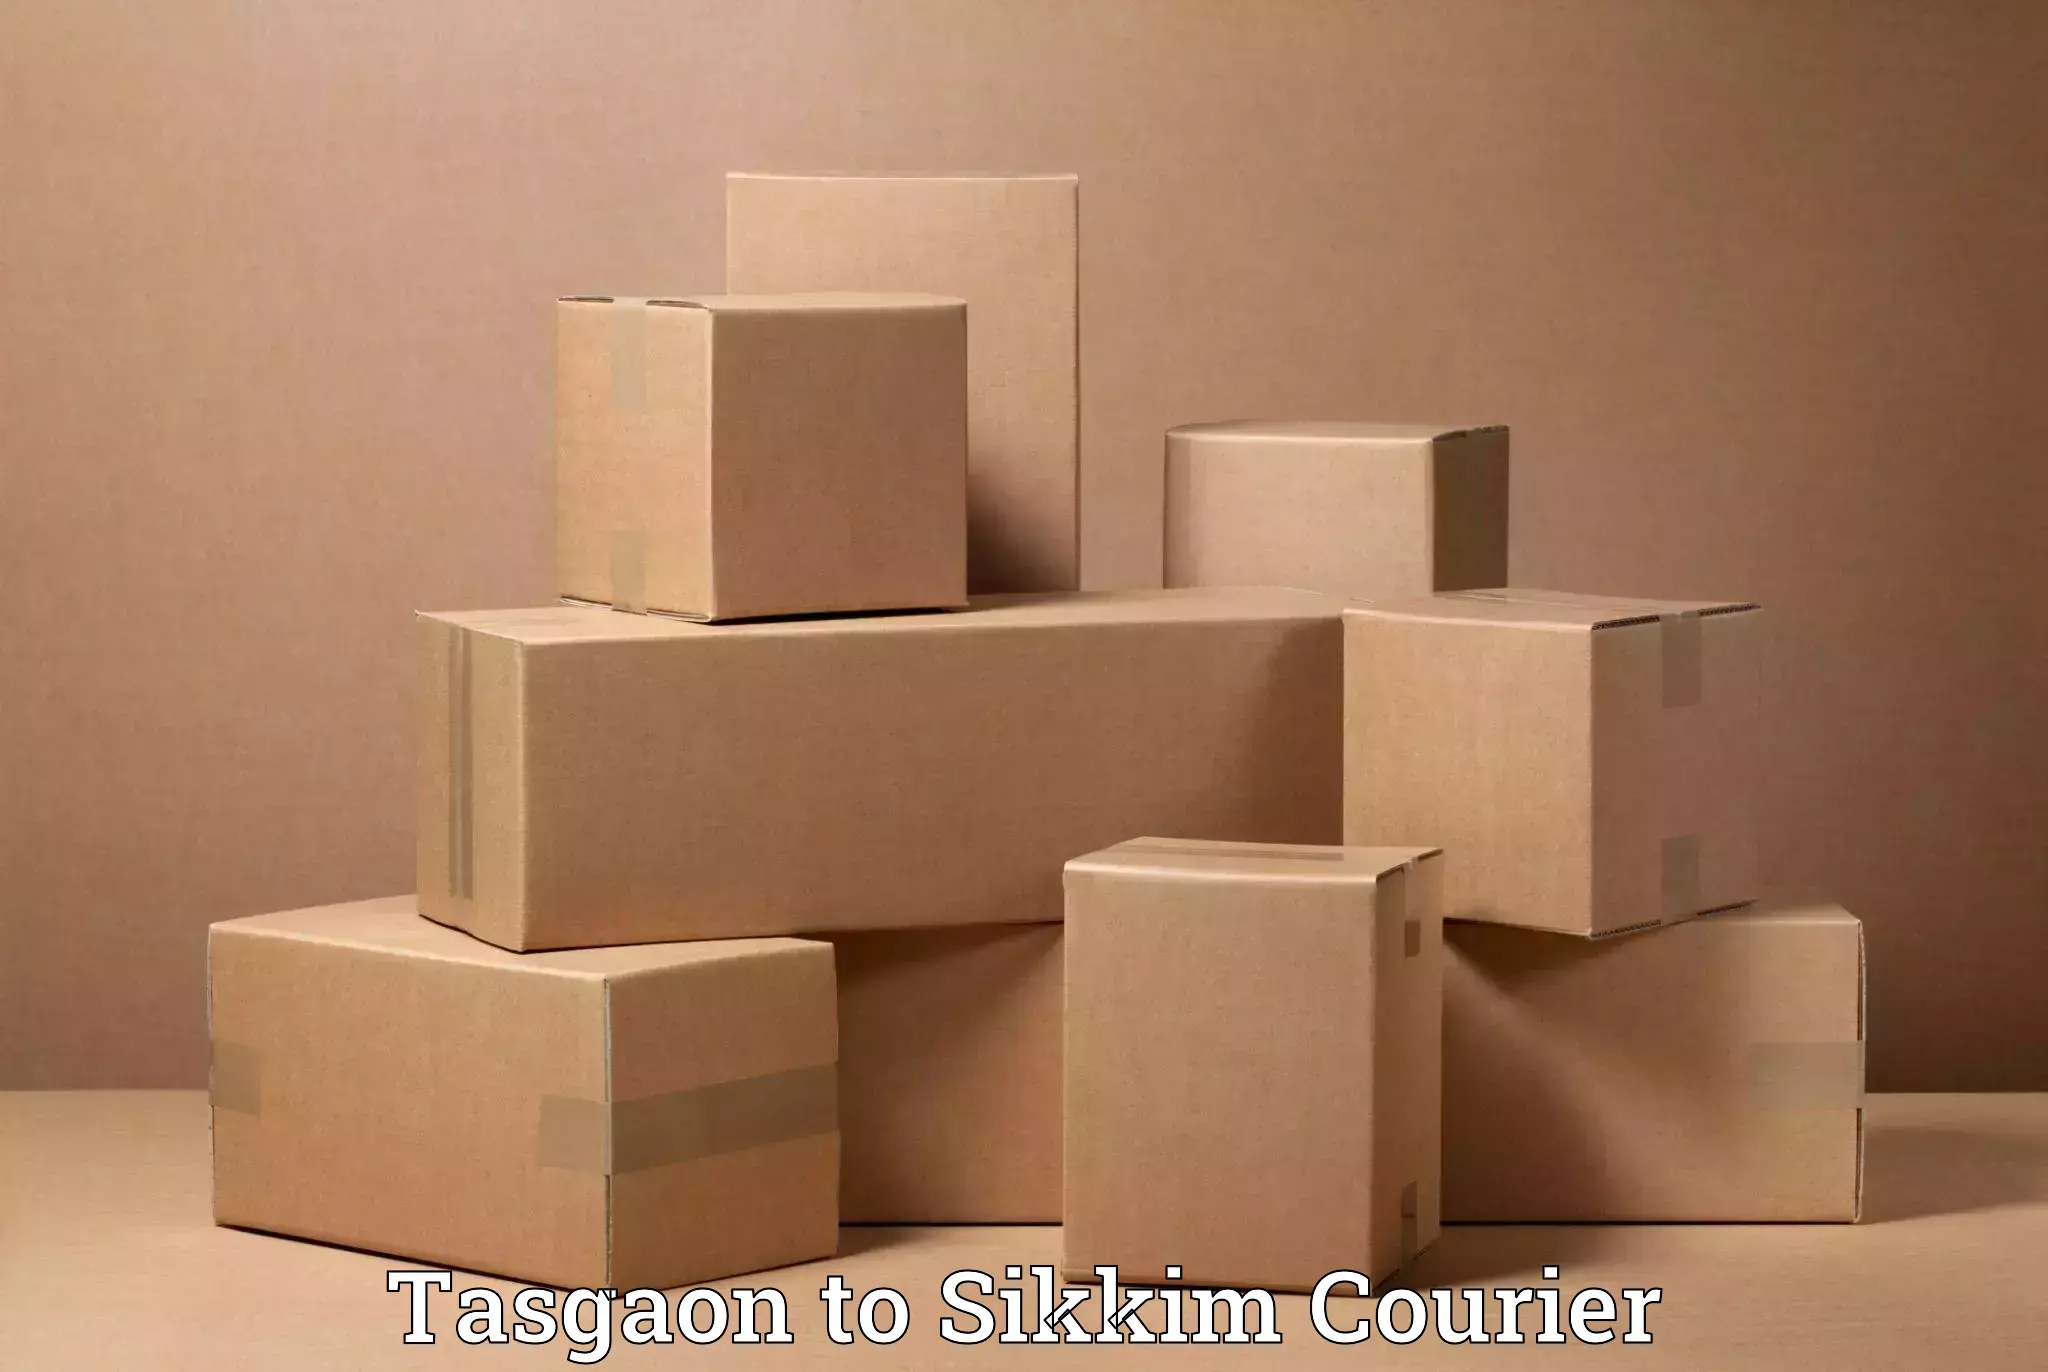 Professional moving company Tasgaon to Mangan